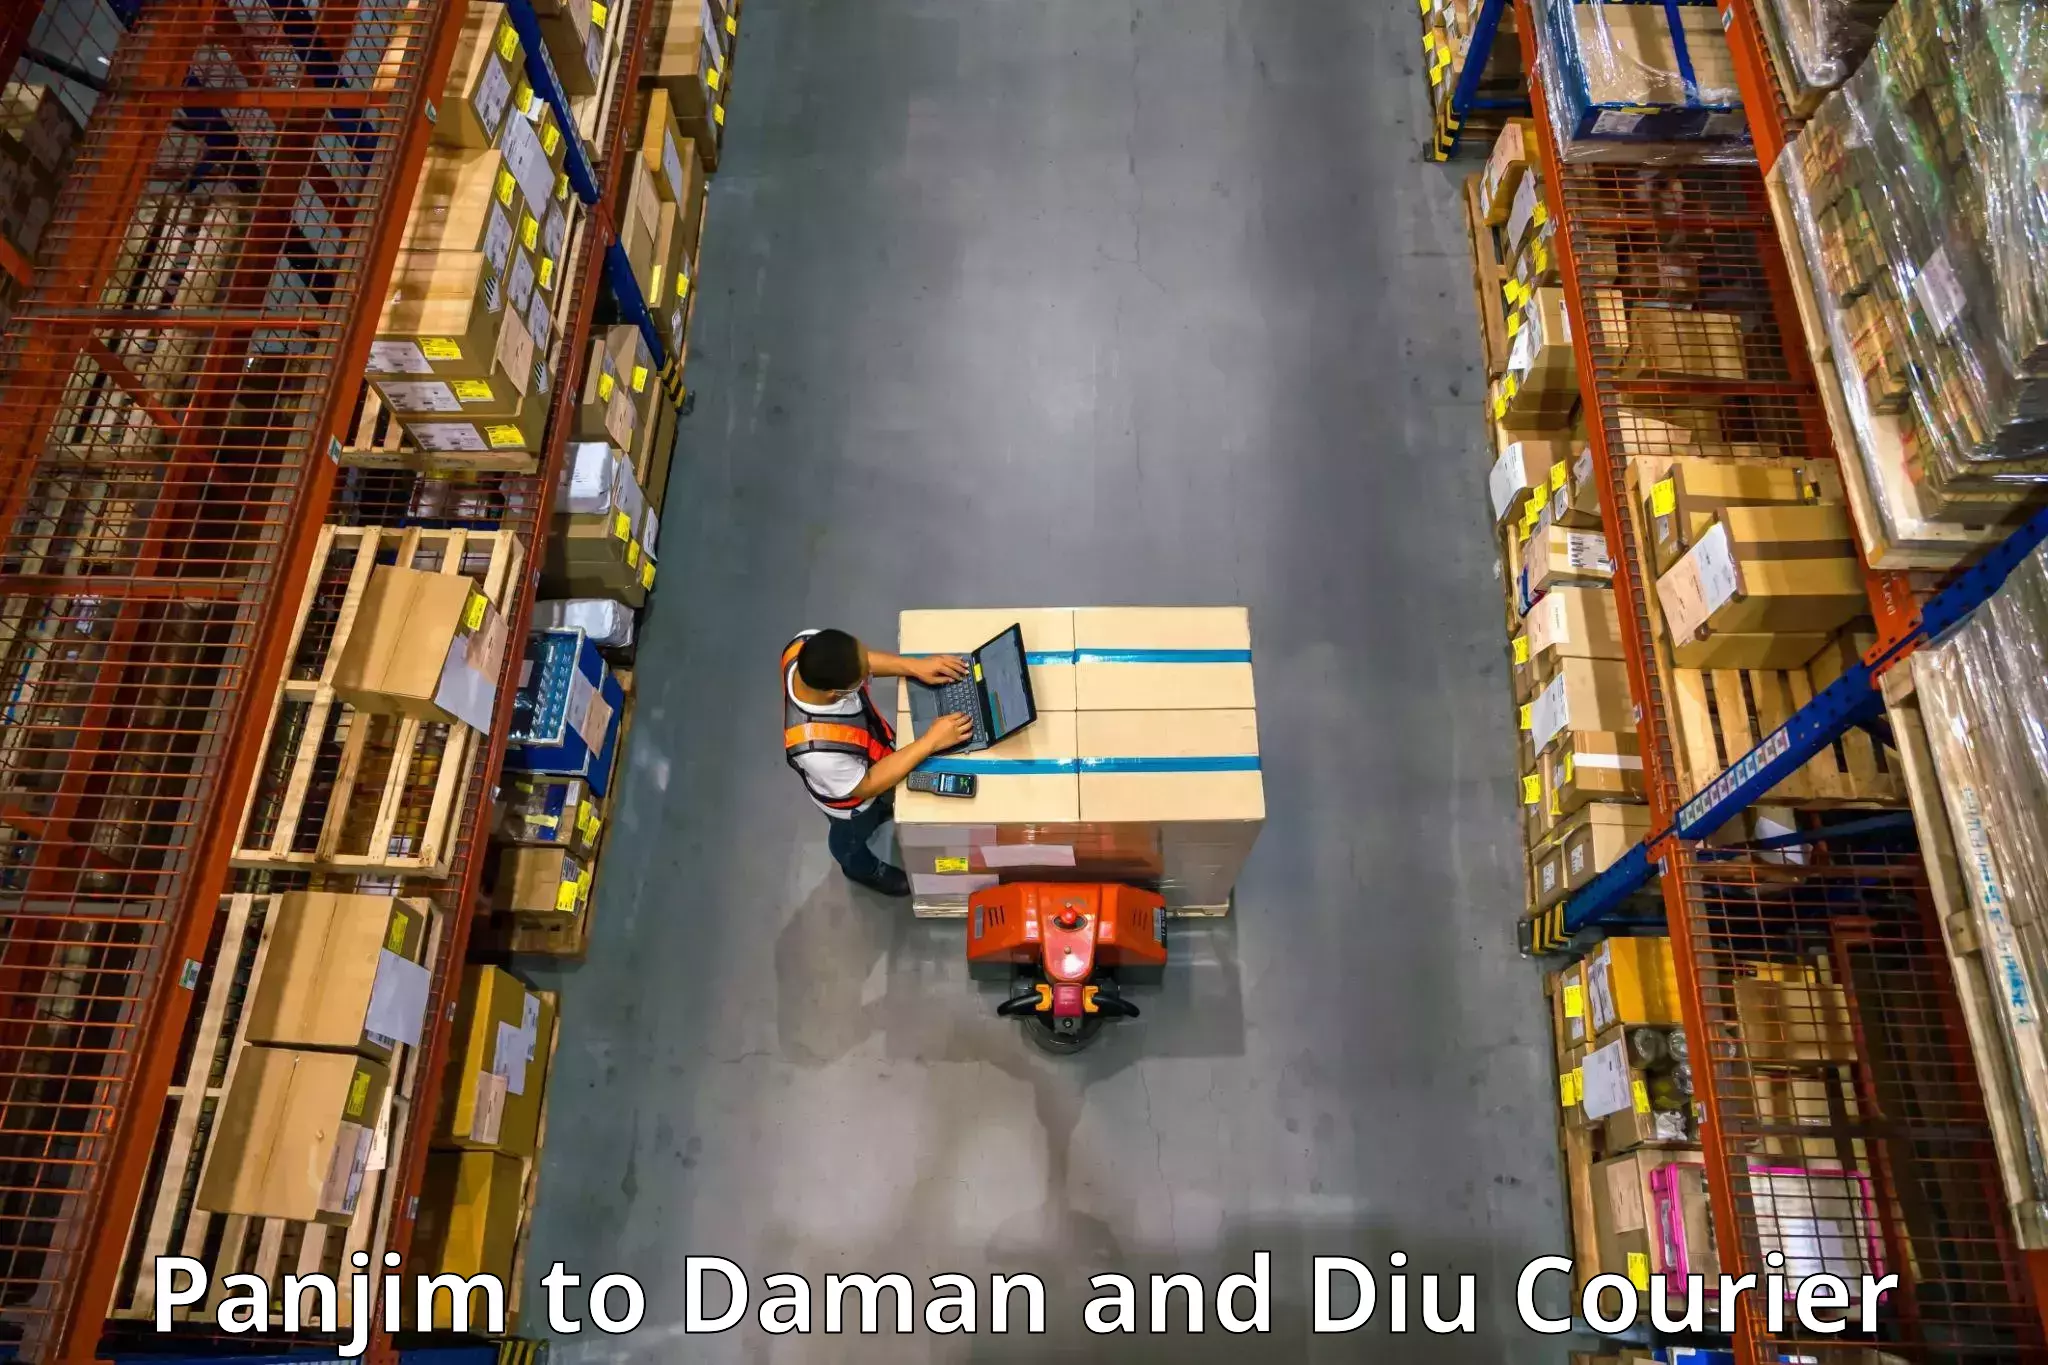 Furniture moving experts Panjim to Daman and Diu